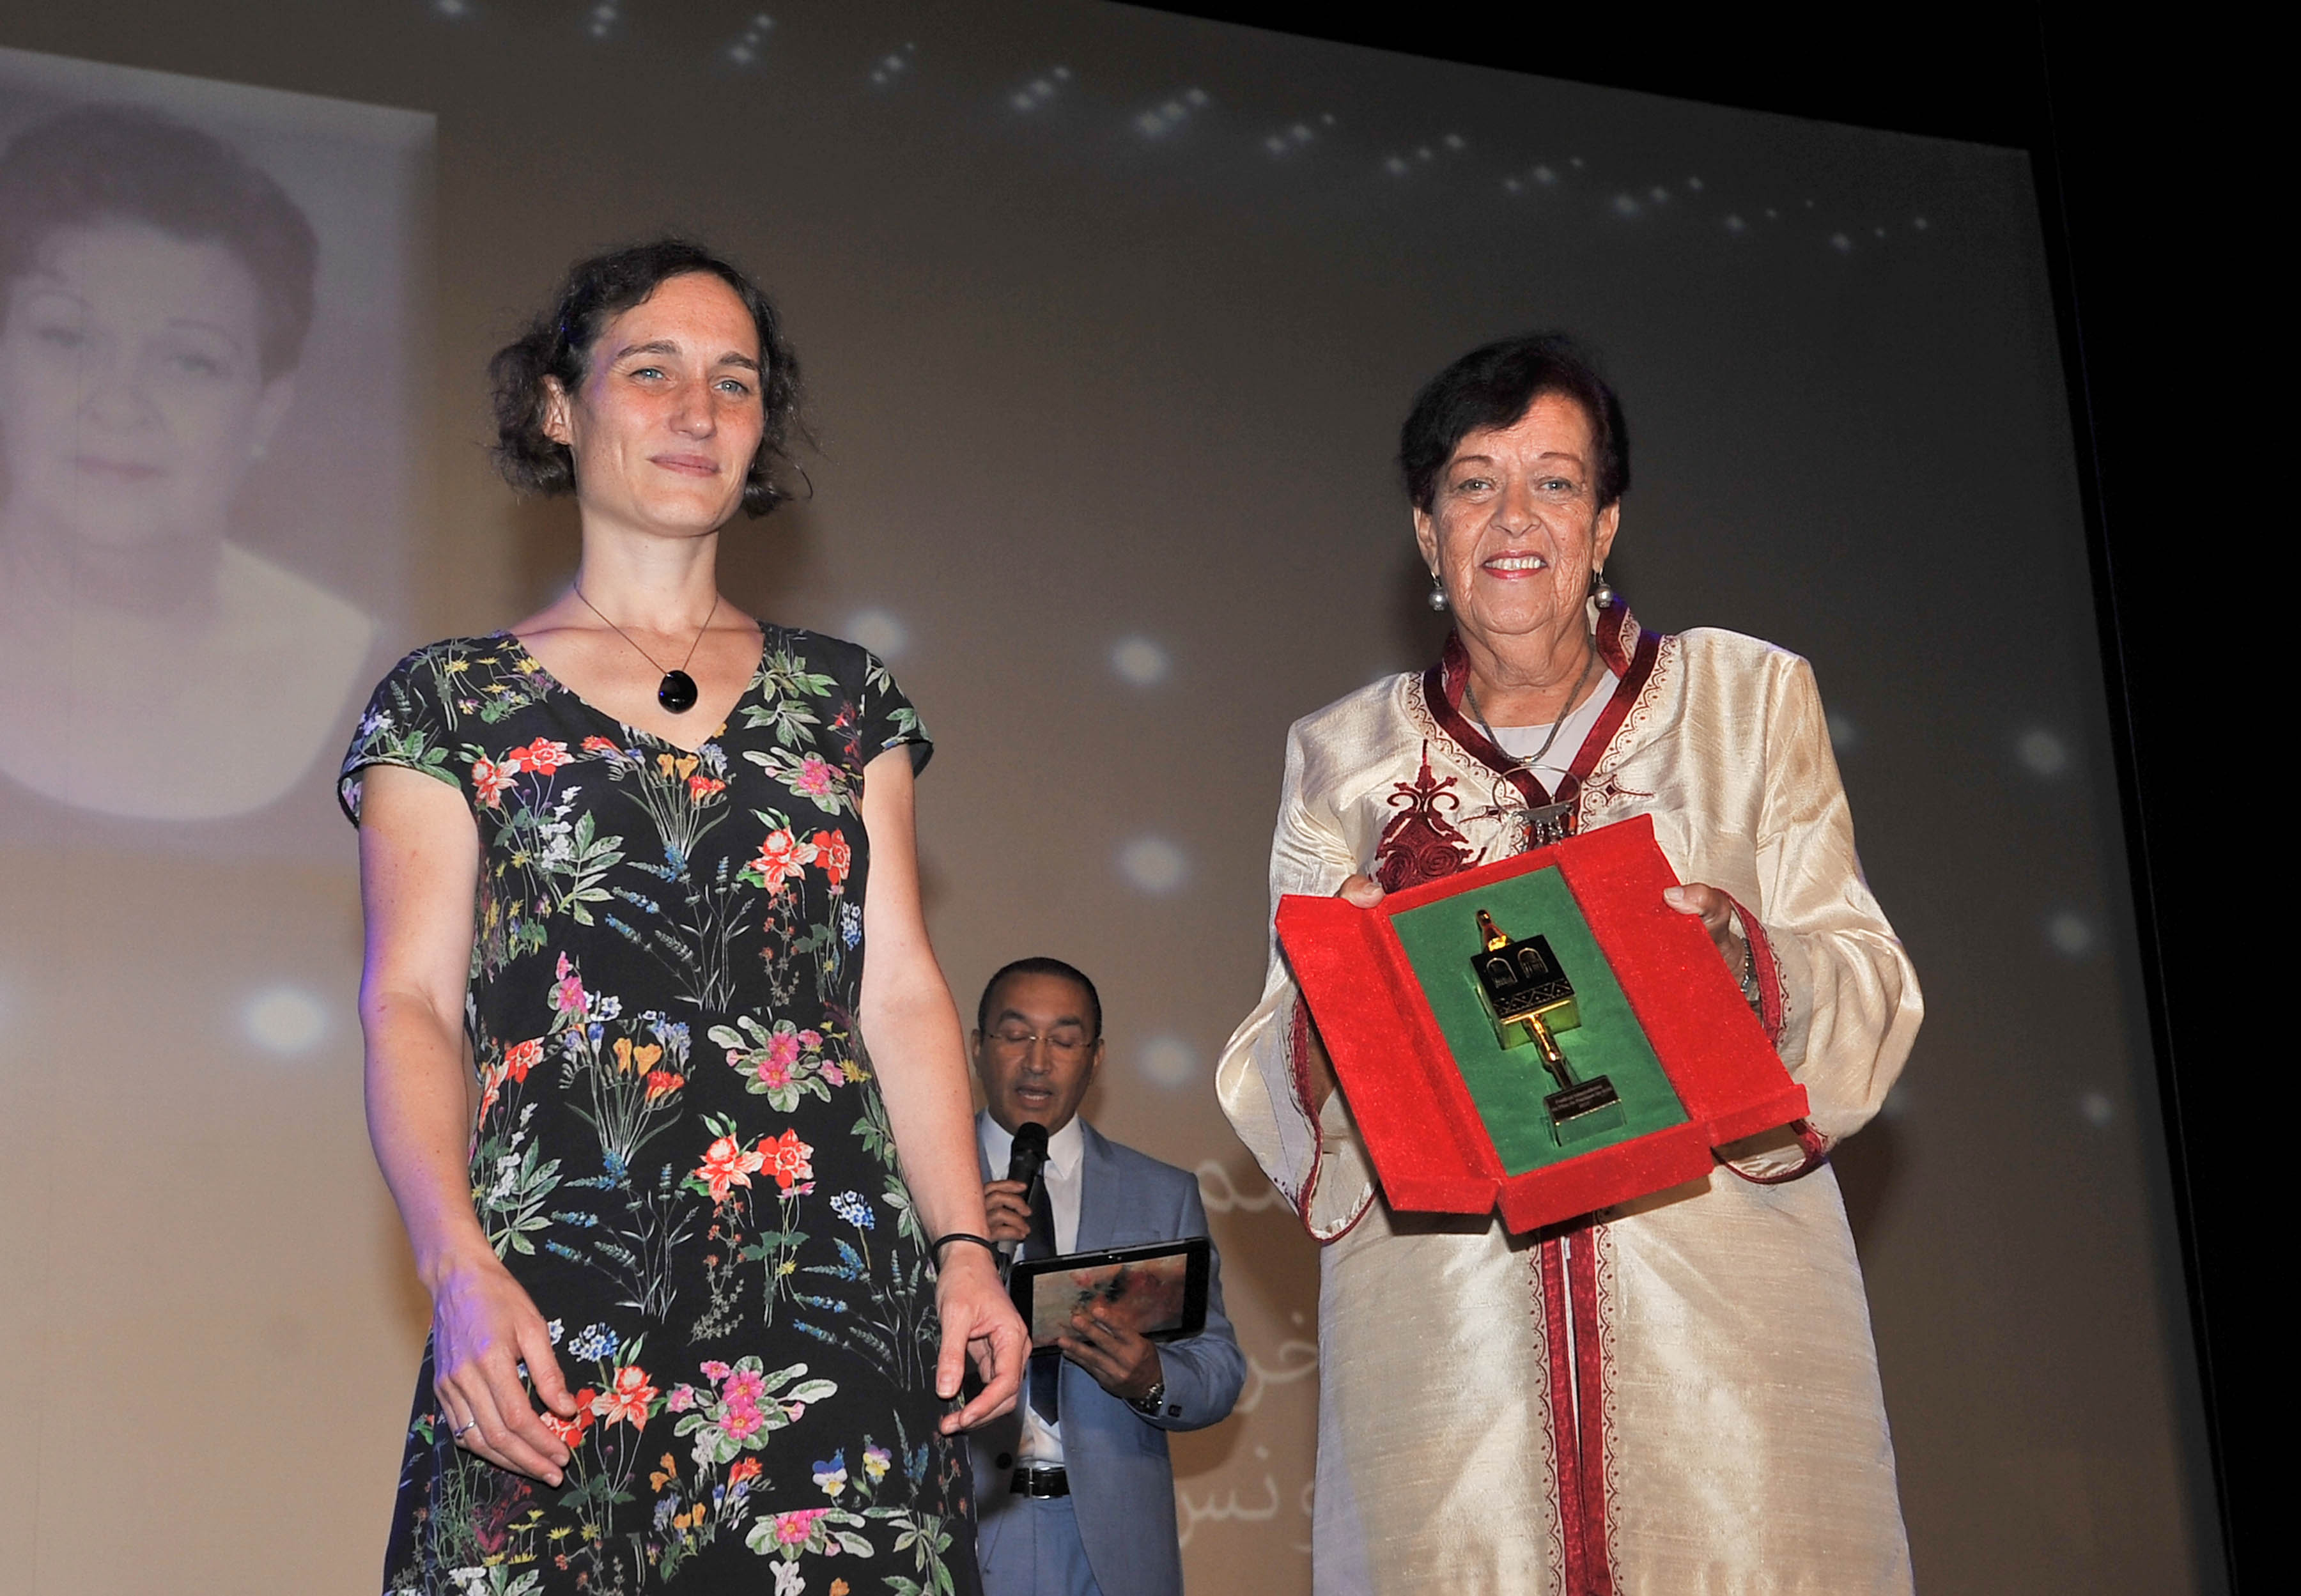 لحظة تكريم المخرجة التونسية سلمى بكار (يمينا) خلال الافتتاح / تصوير: رشيد تنيوني